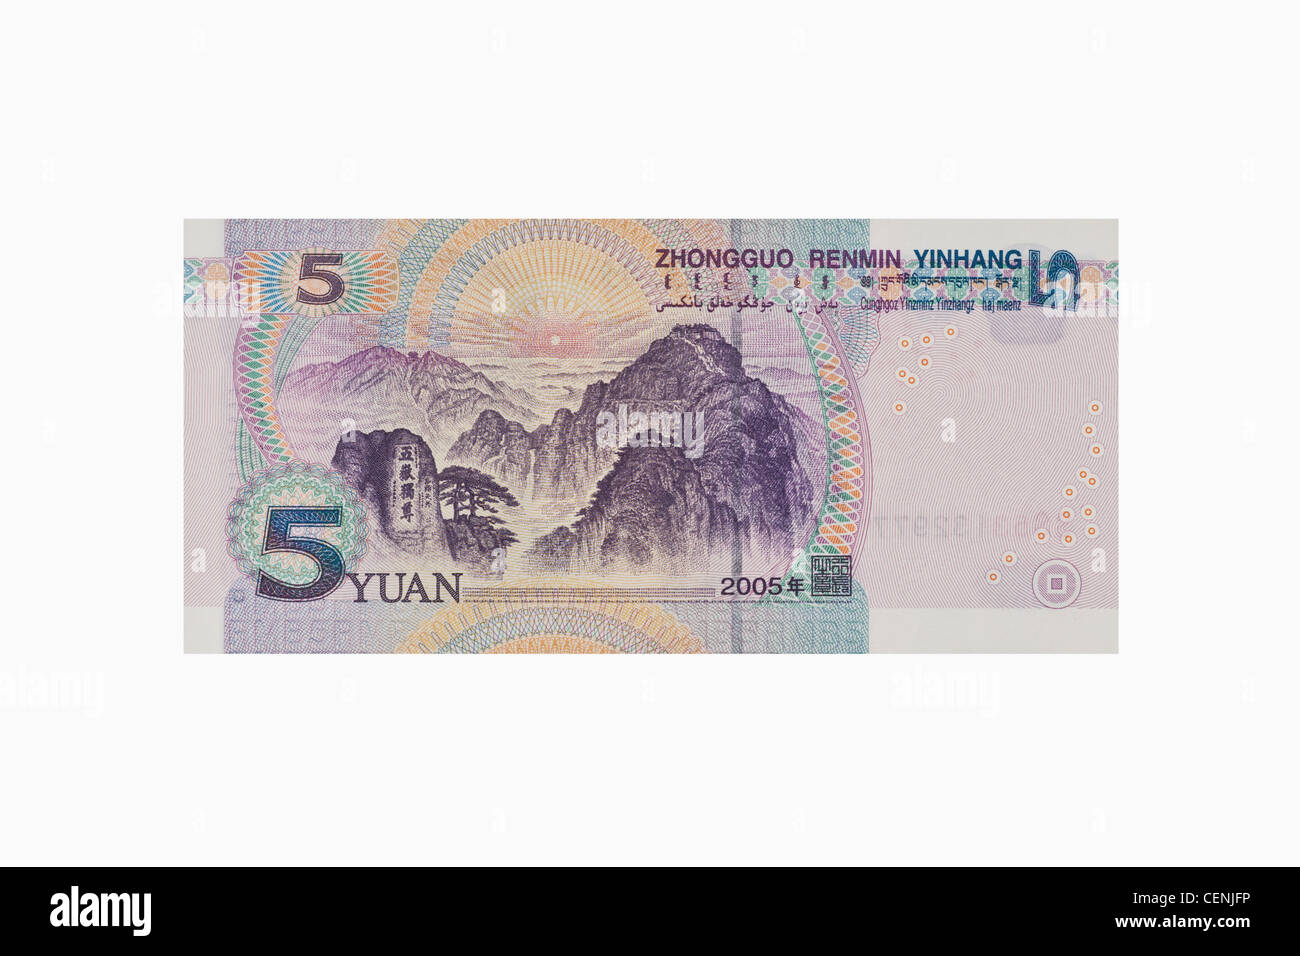 Lato posteriore del 5 yuan bill. Il renminbi, la valuta cinese, è stato introdotto nel 1949 dopo la fondazione della Repubblica popolare cinese. Foto Stock